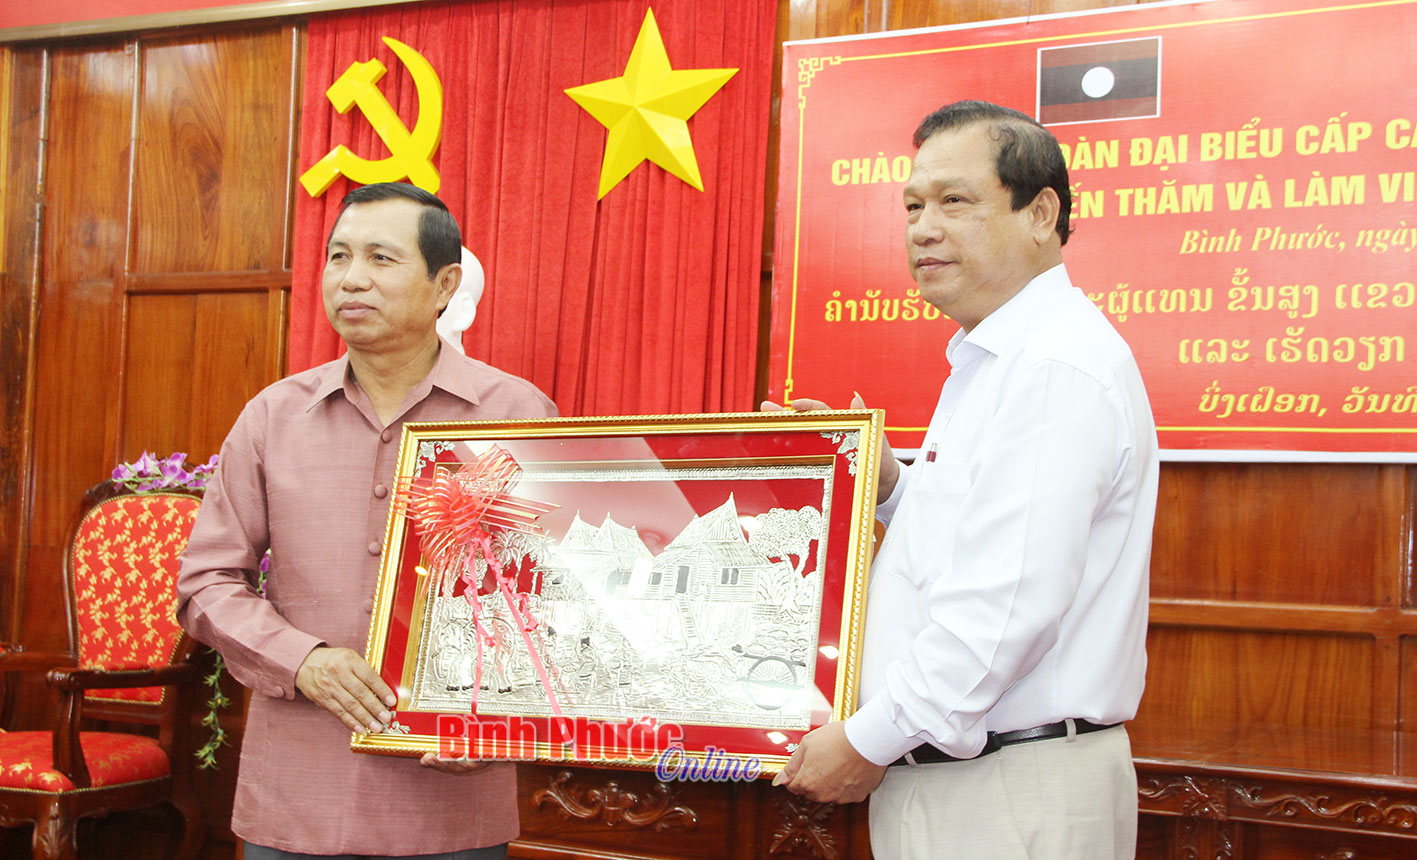 Đồng chí Si su van Vông Chom Sy, Ủy viên Trung ương Đảng, Tỉnh trưởng tỉnh Salavan tặng quà lưu niệm cho tỉnh Bình Phước